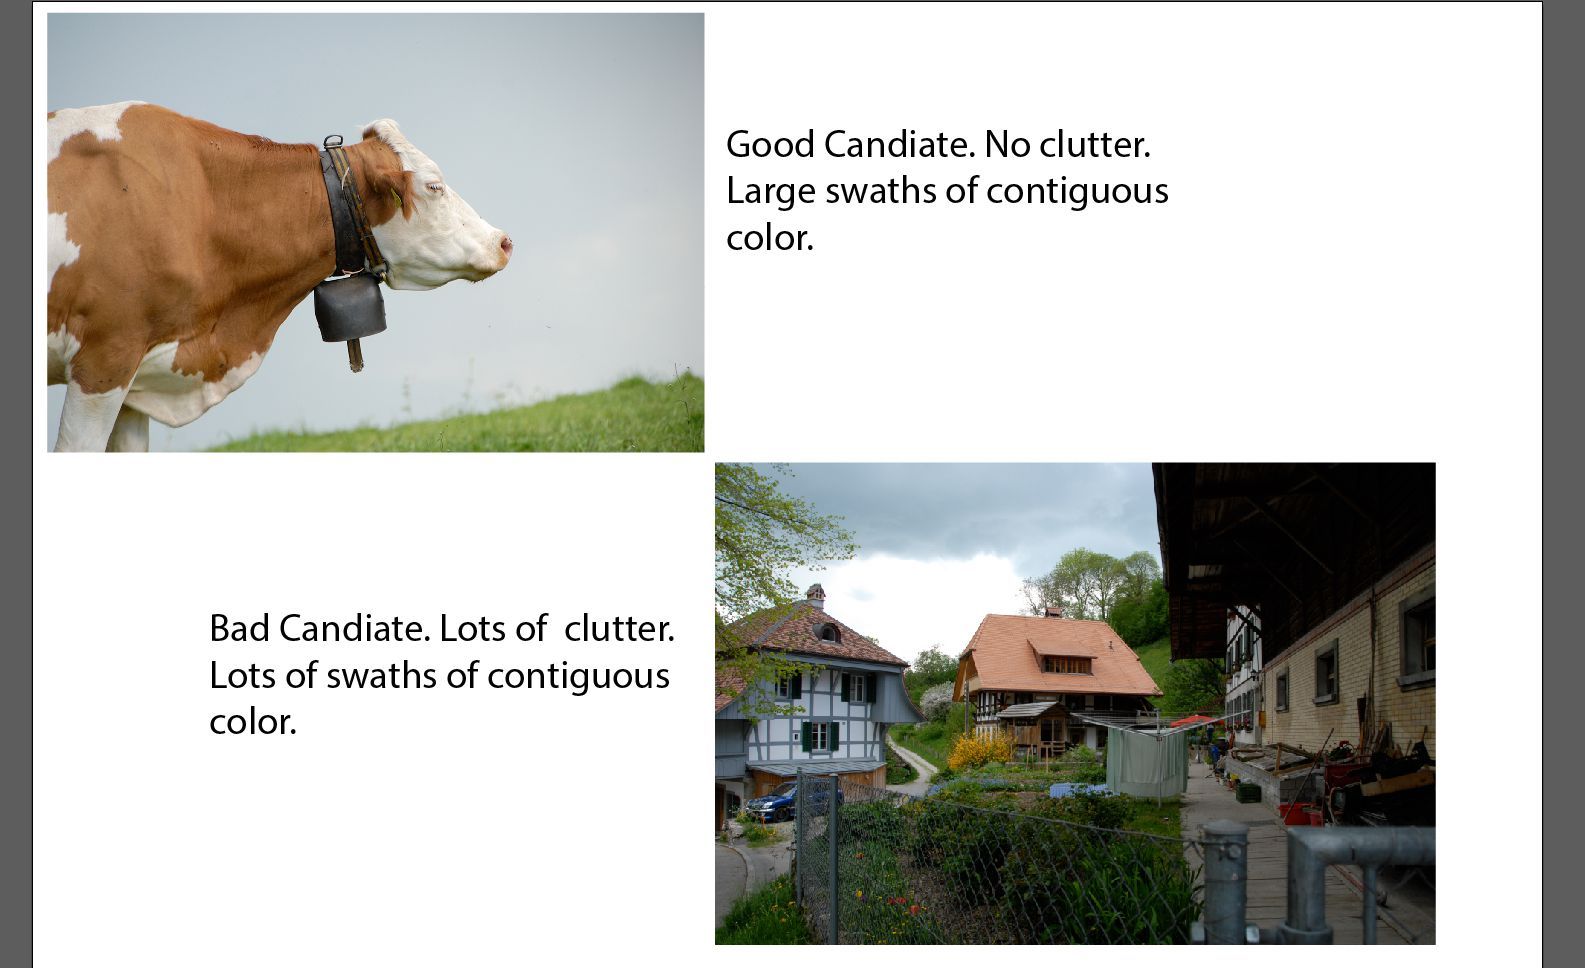 Изображение показывает корову и другое изображение деревни. Деревенский образ имеет беспорядок и не является хорошим кандидатом.